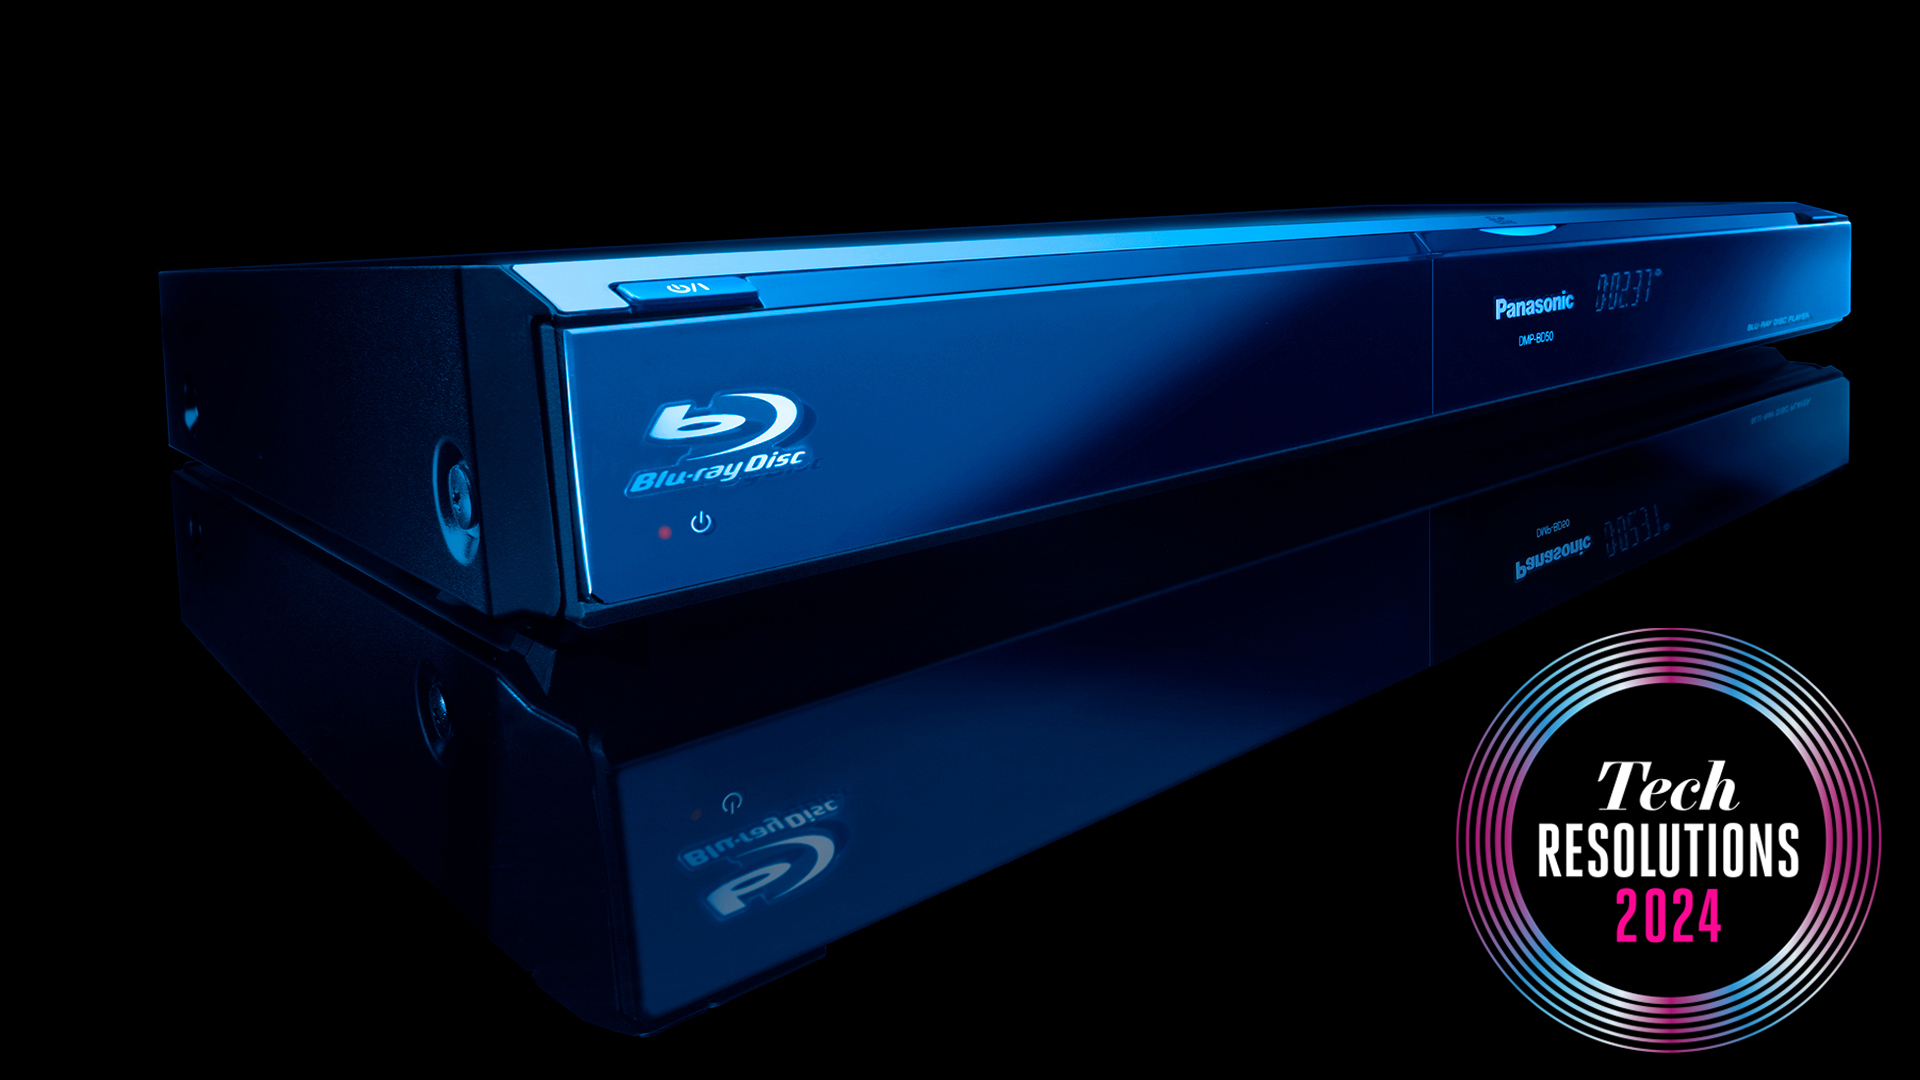 Reproductor de Blu-ray Panasonic, con el logotipo de Blu-ray destacado